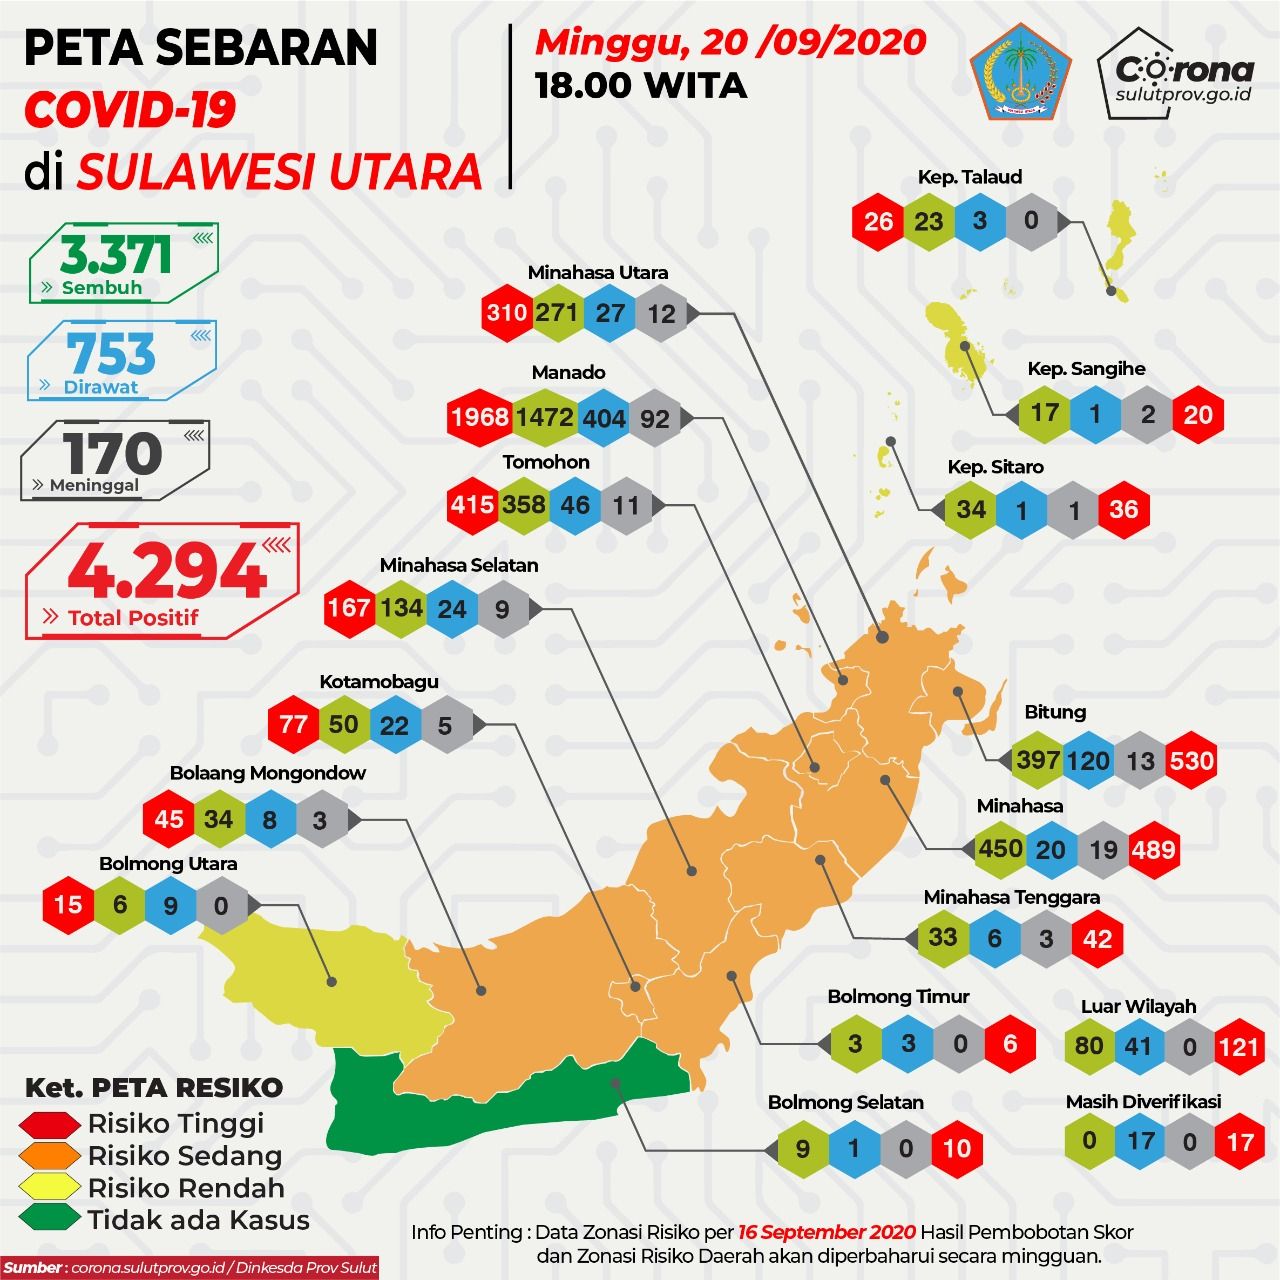 Peta Sebaran Covid-19 di Sulawesi Utara